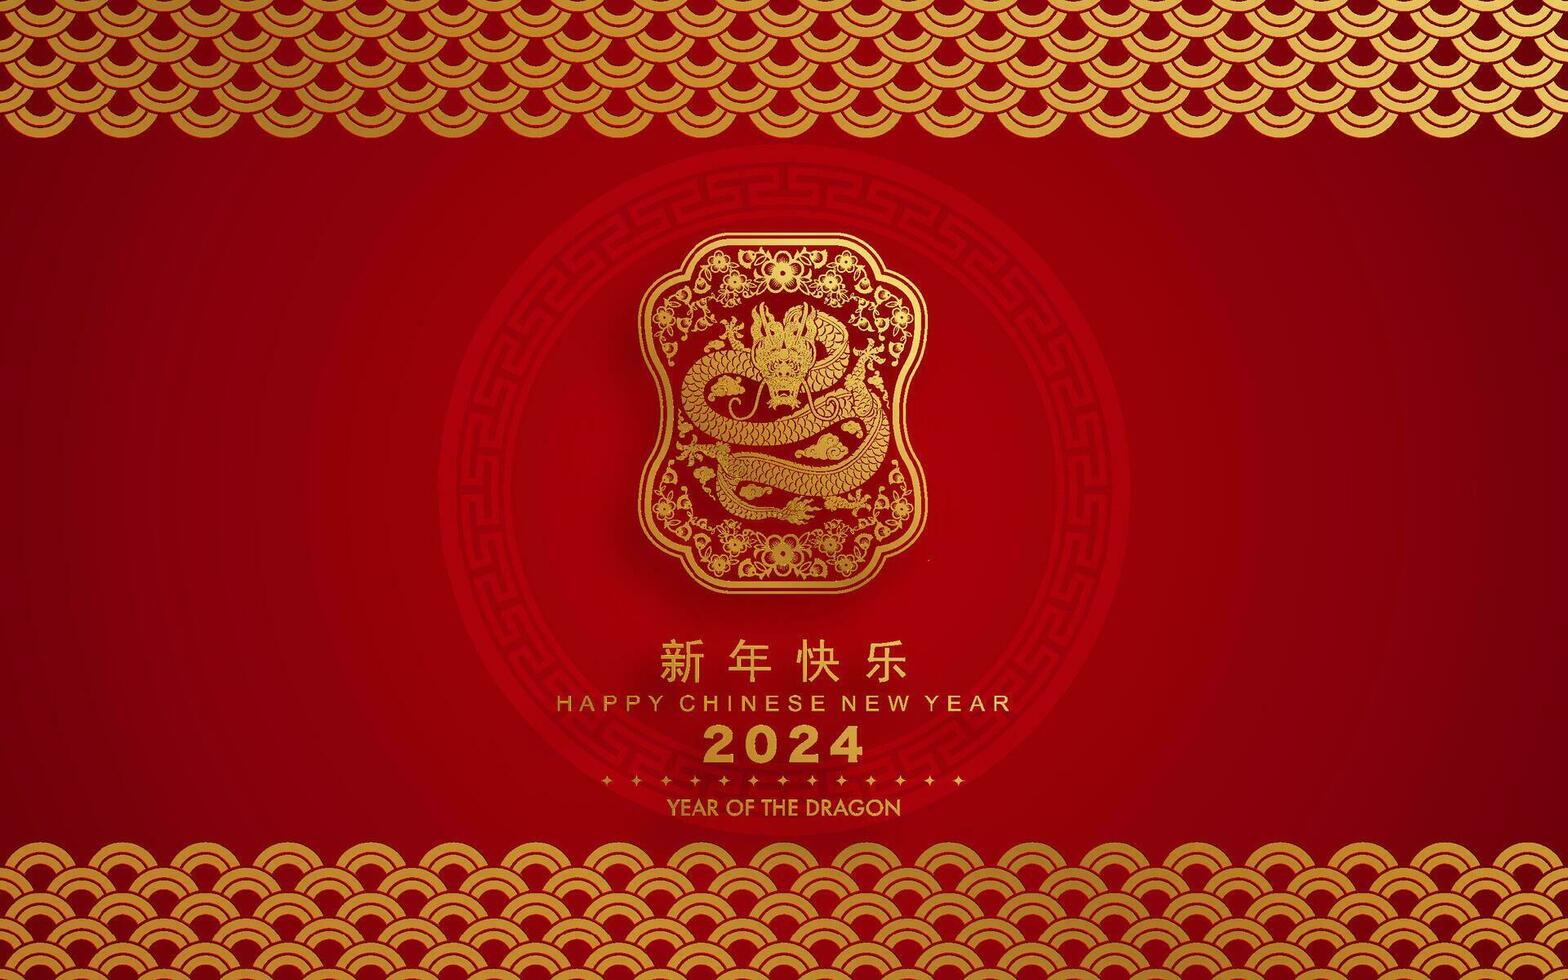 contento chino nuevo año 2024 el continuar zodíaco firmar con flor,linterna,asiática elementos oro y rojo papel cortar estilo en color antecedentes. vector